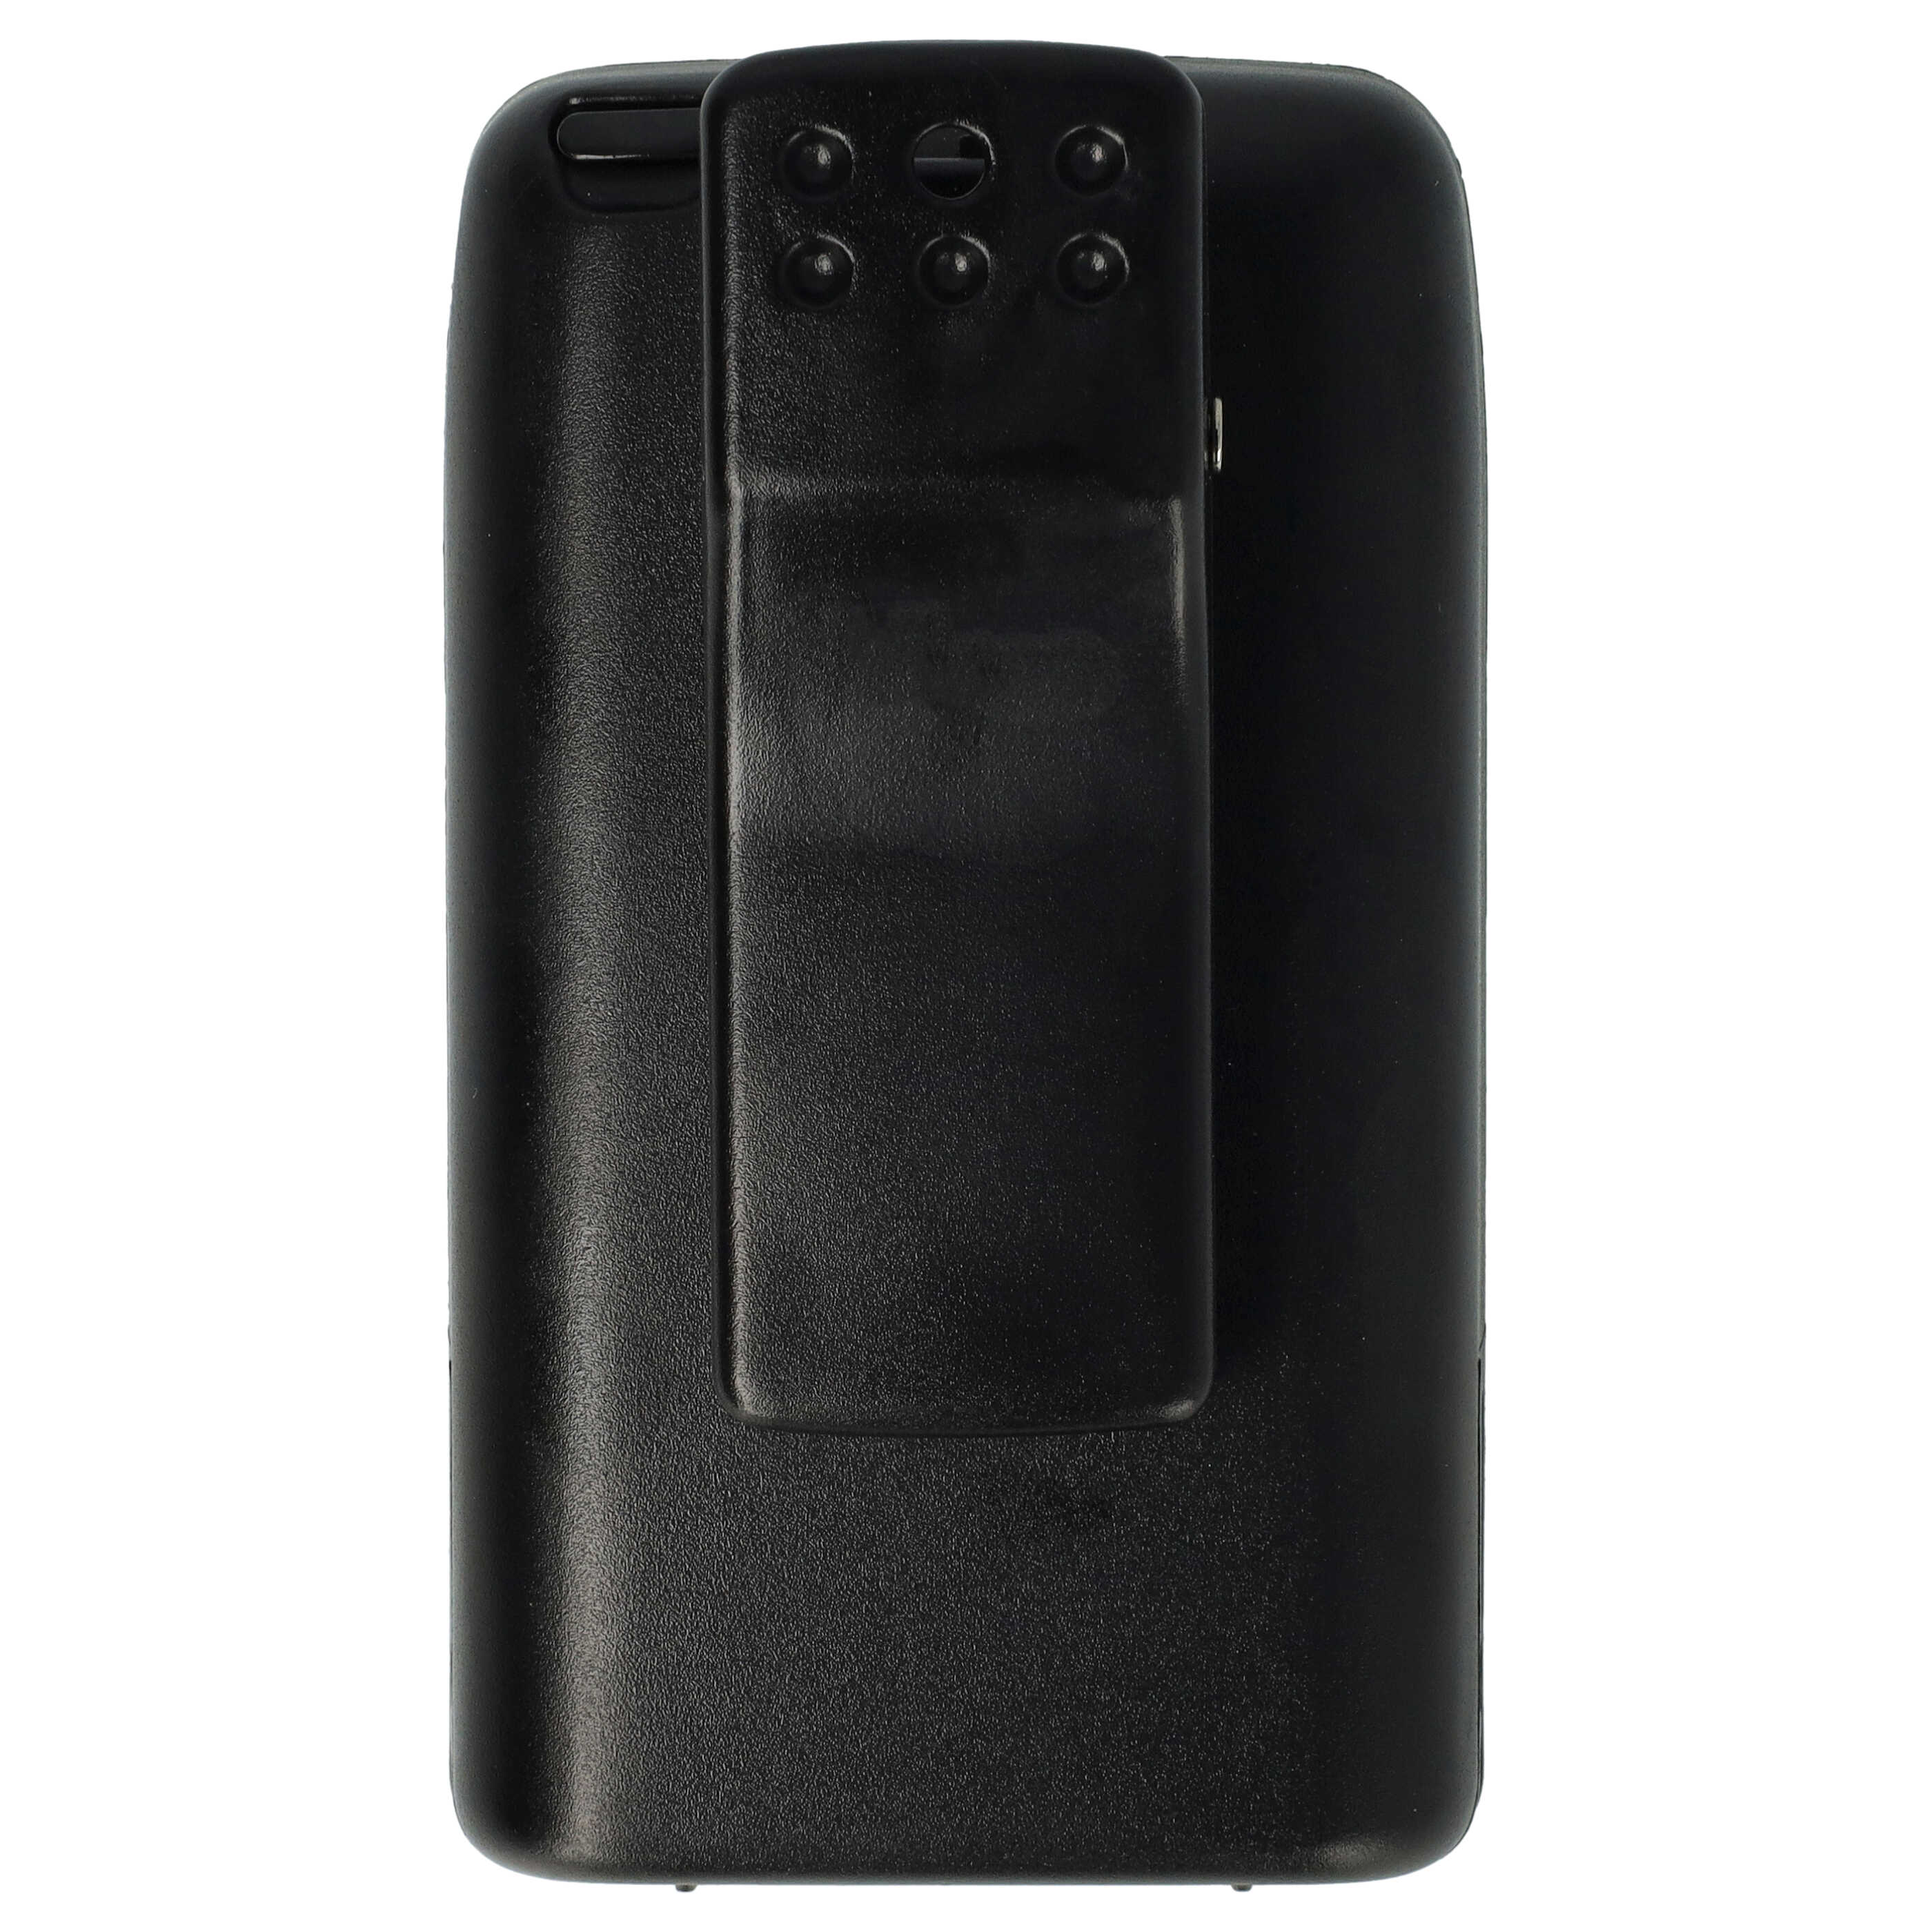 Batería reemplaza FNB-V47 para radio, walkie-talkie Vertex / Yaesu - 2000 mAh 7,2 V NiMH con clip